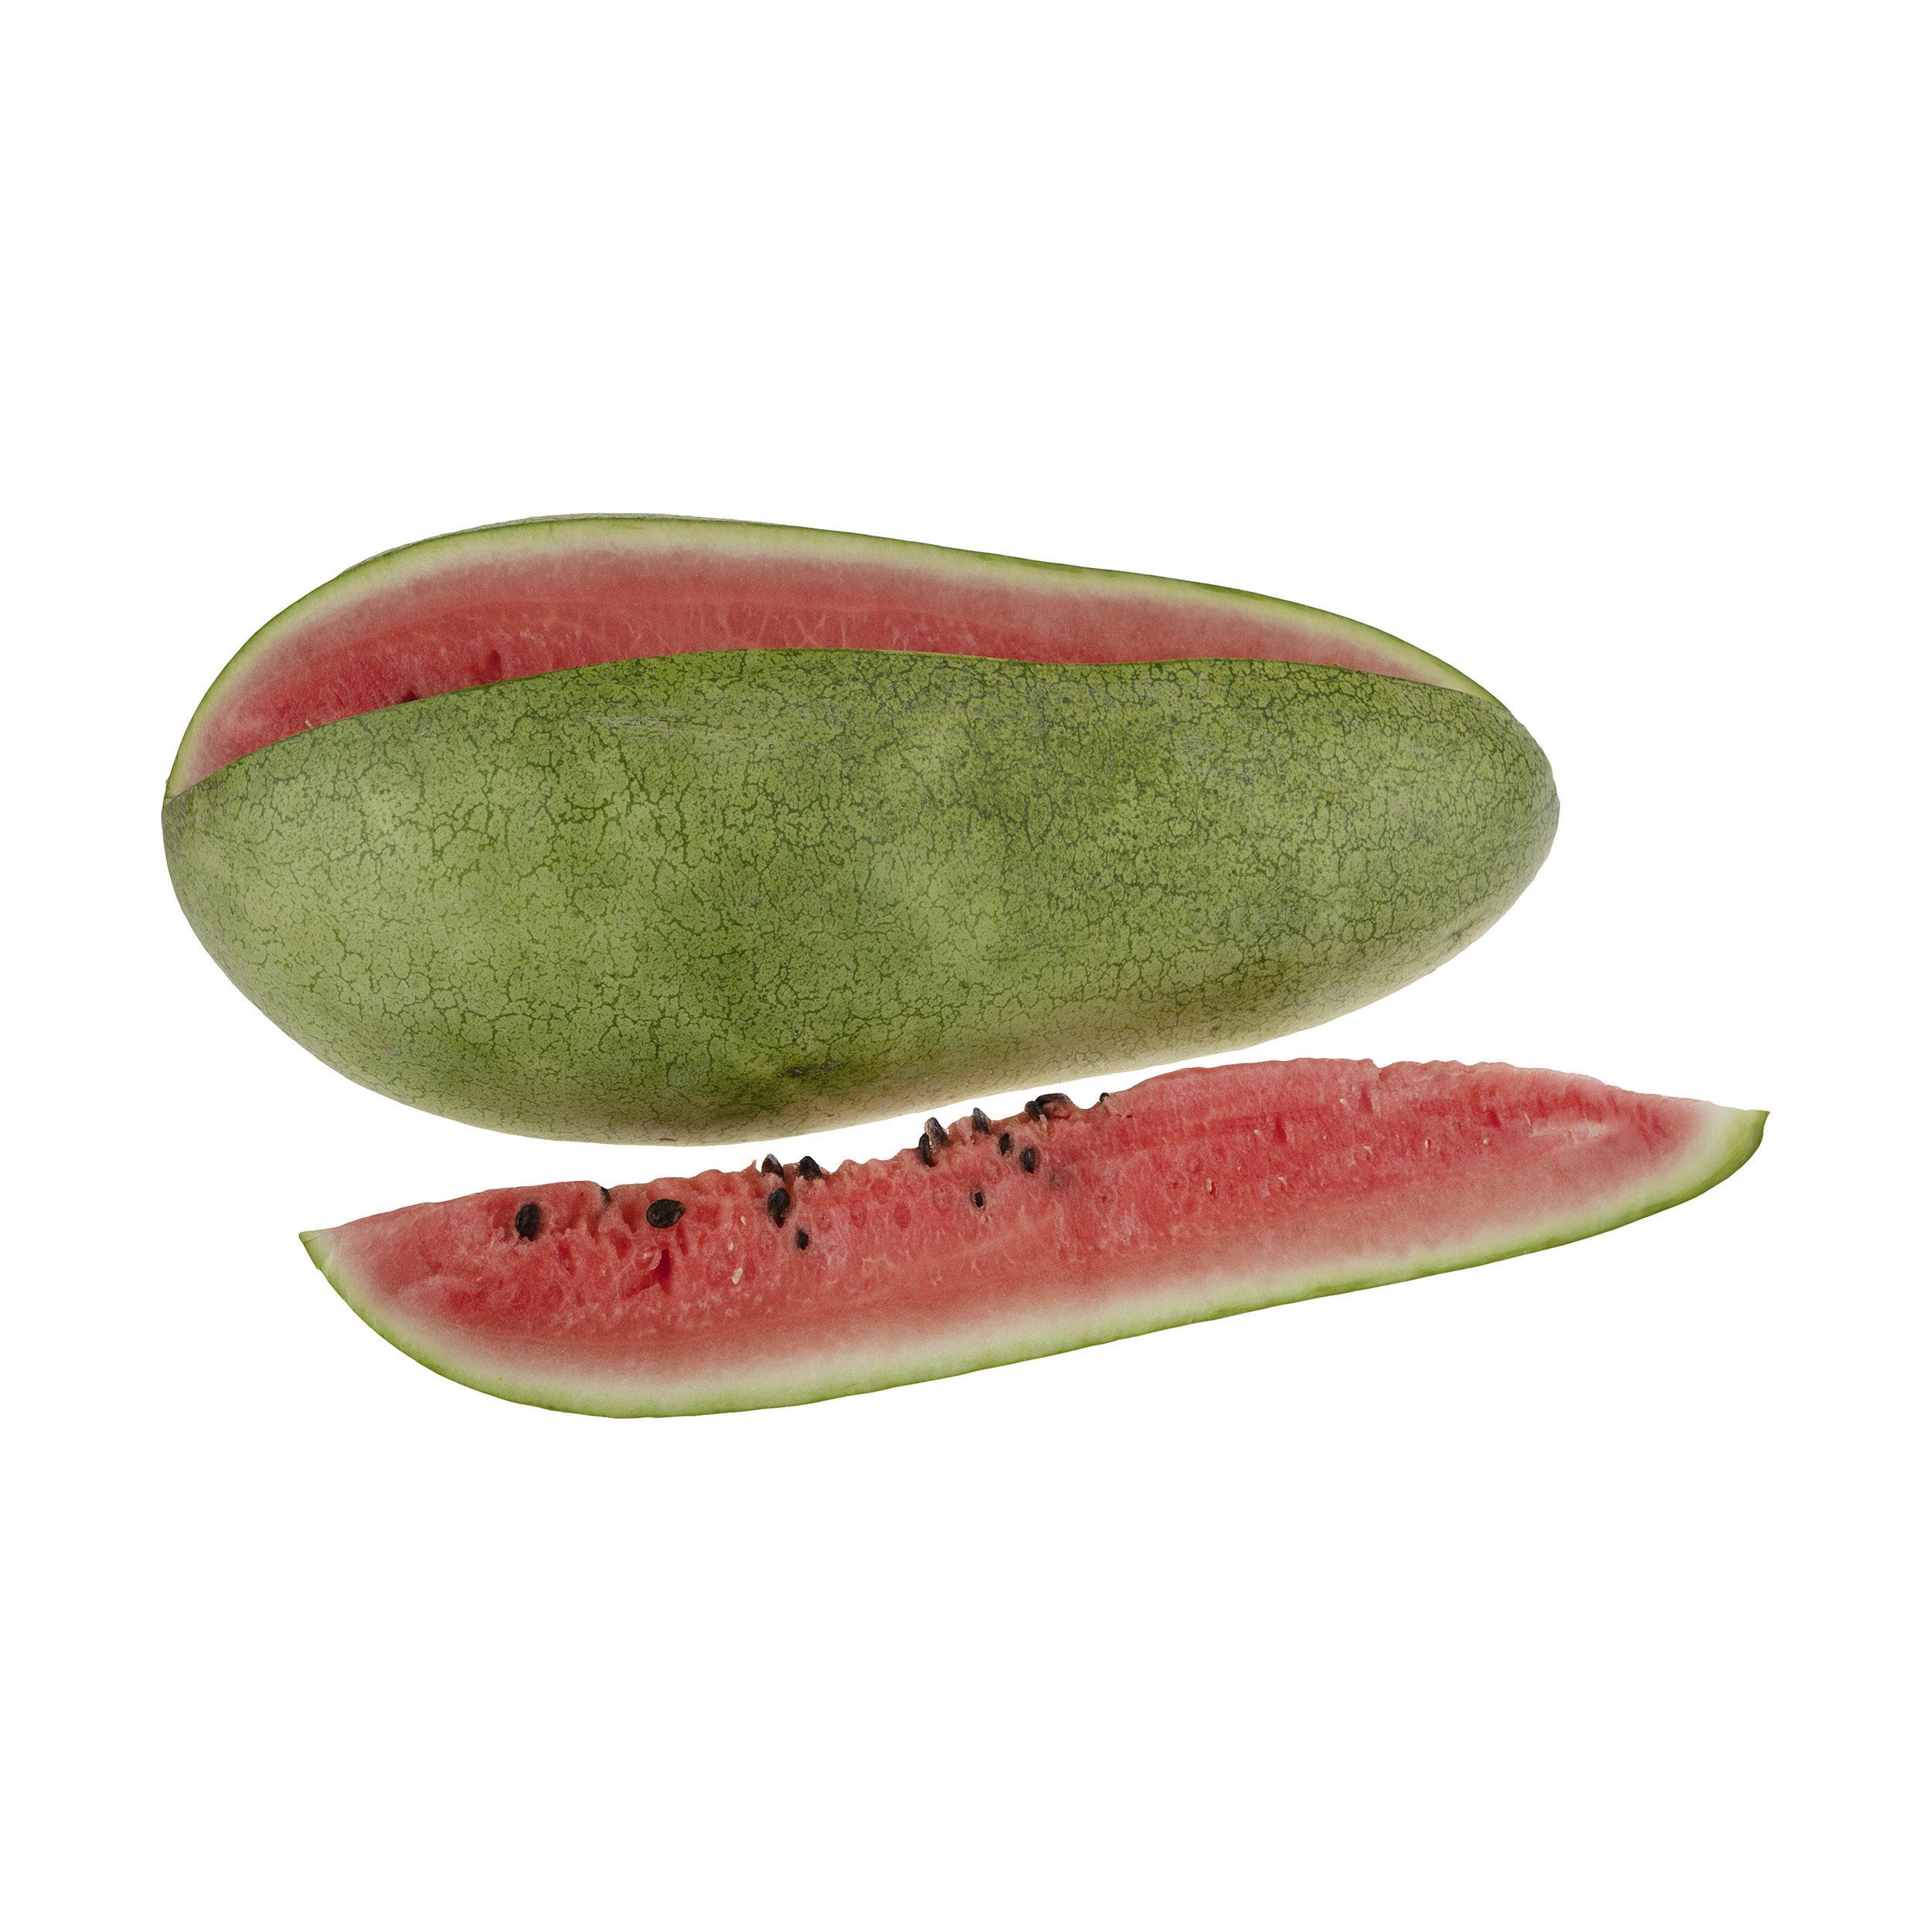 هندوانه میناب هودکا - 6 تا 8 کیلوگرم